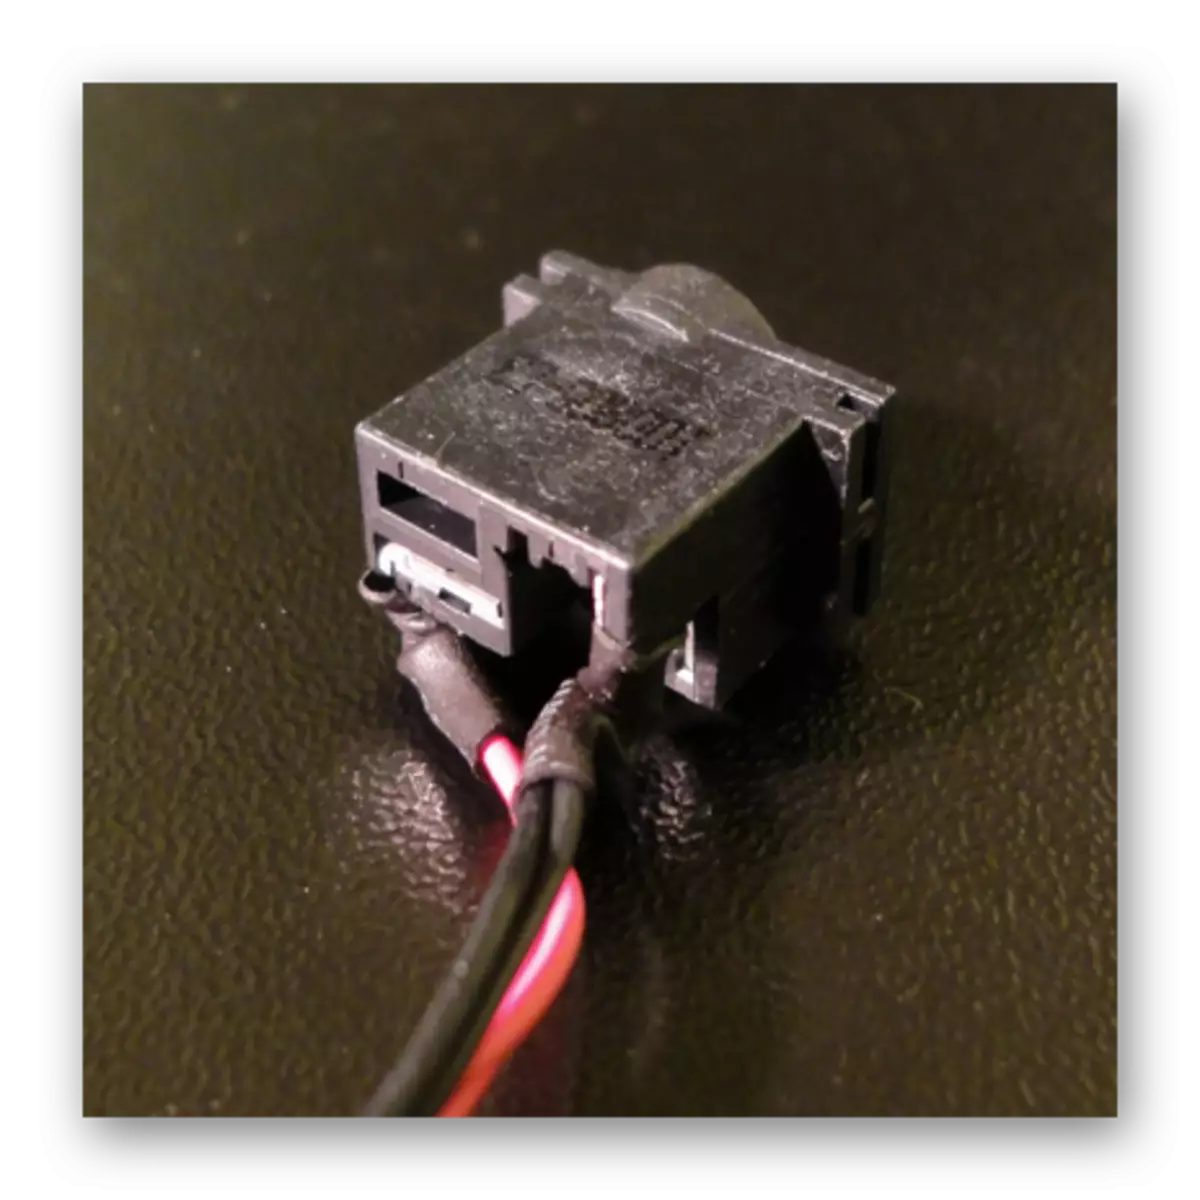 લેપટોપ બેટરીને ઇનપુટ કનેક્ટરમાં કનેક્ટ કરવાની પ્રક્રિયા